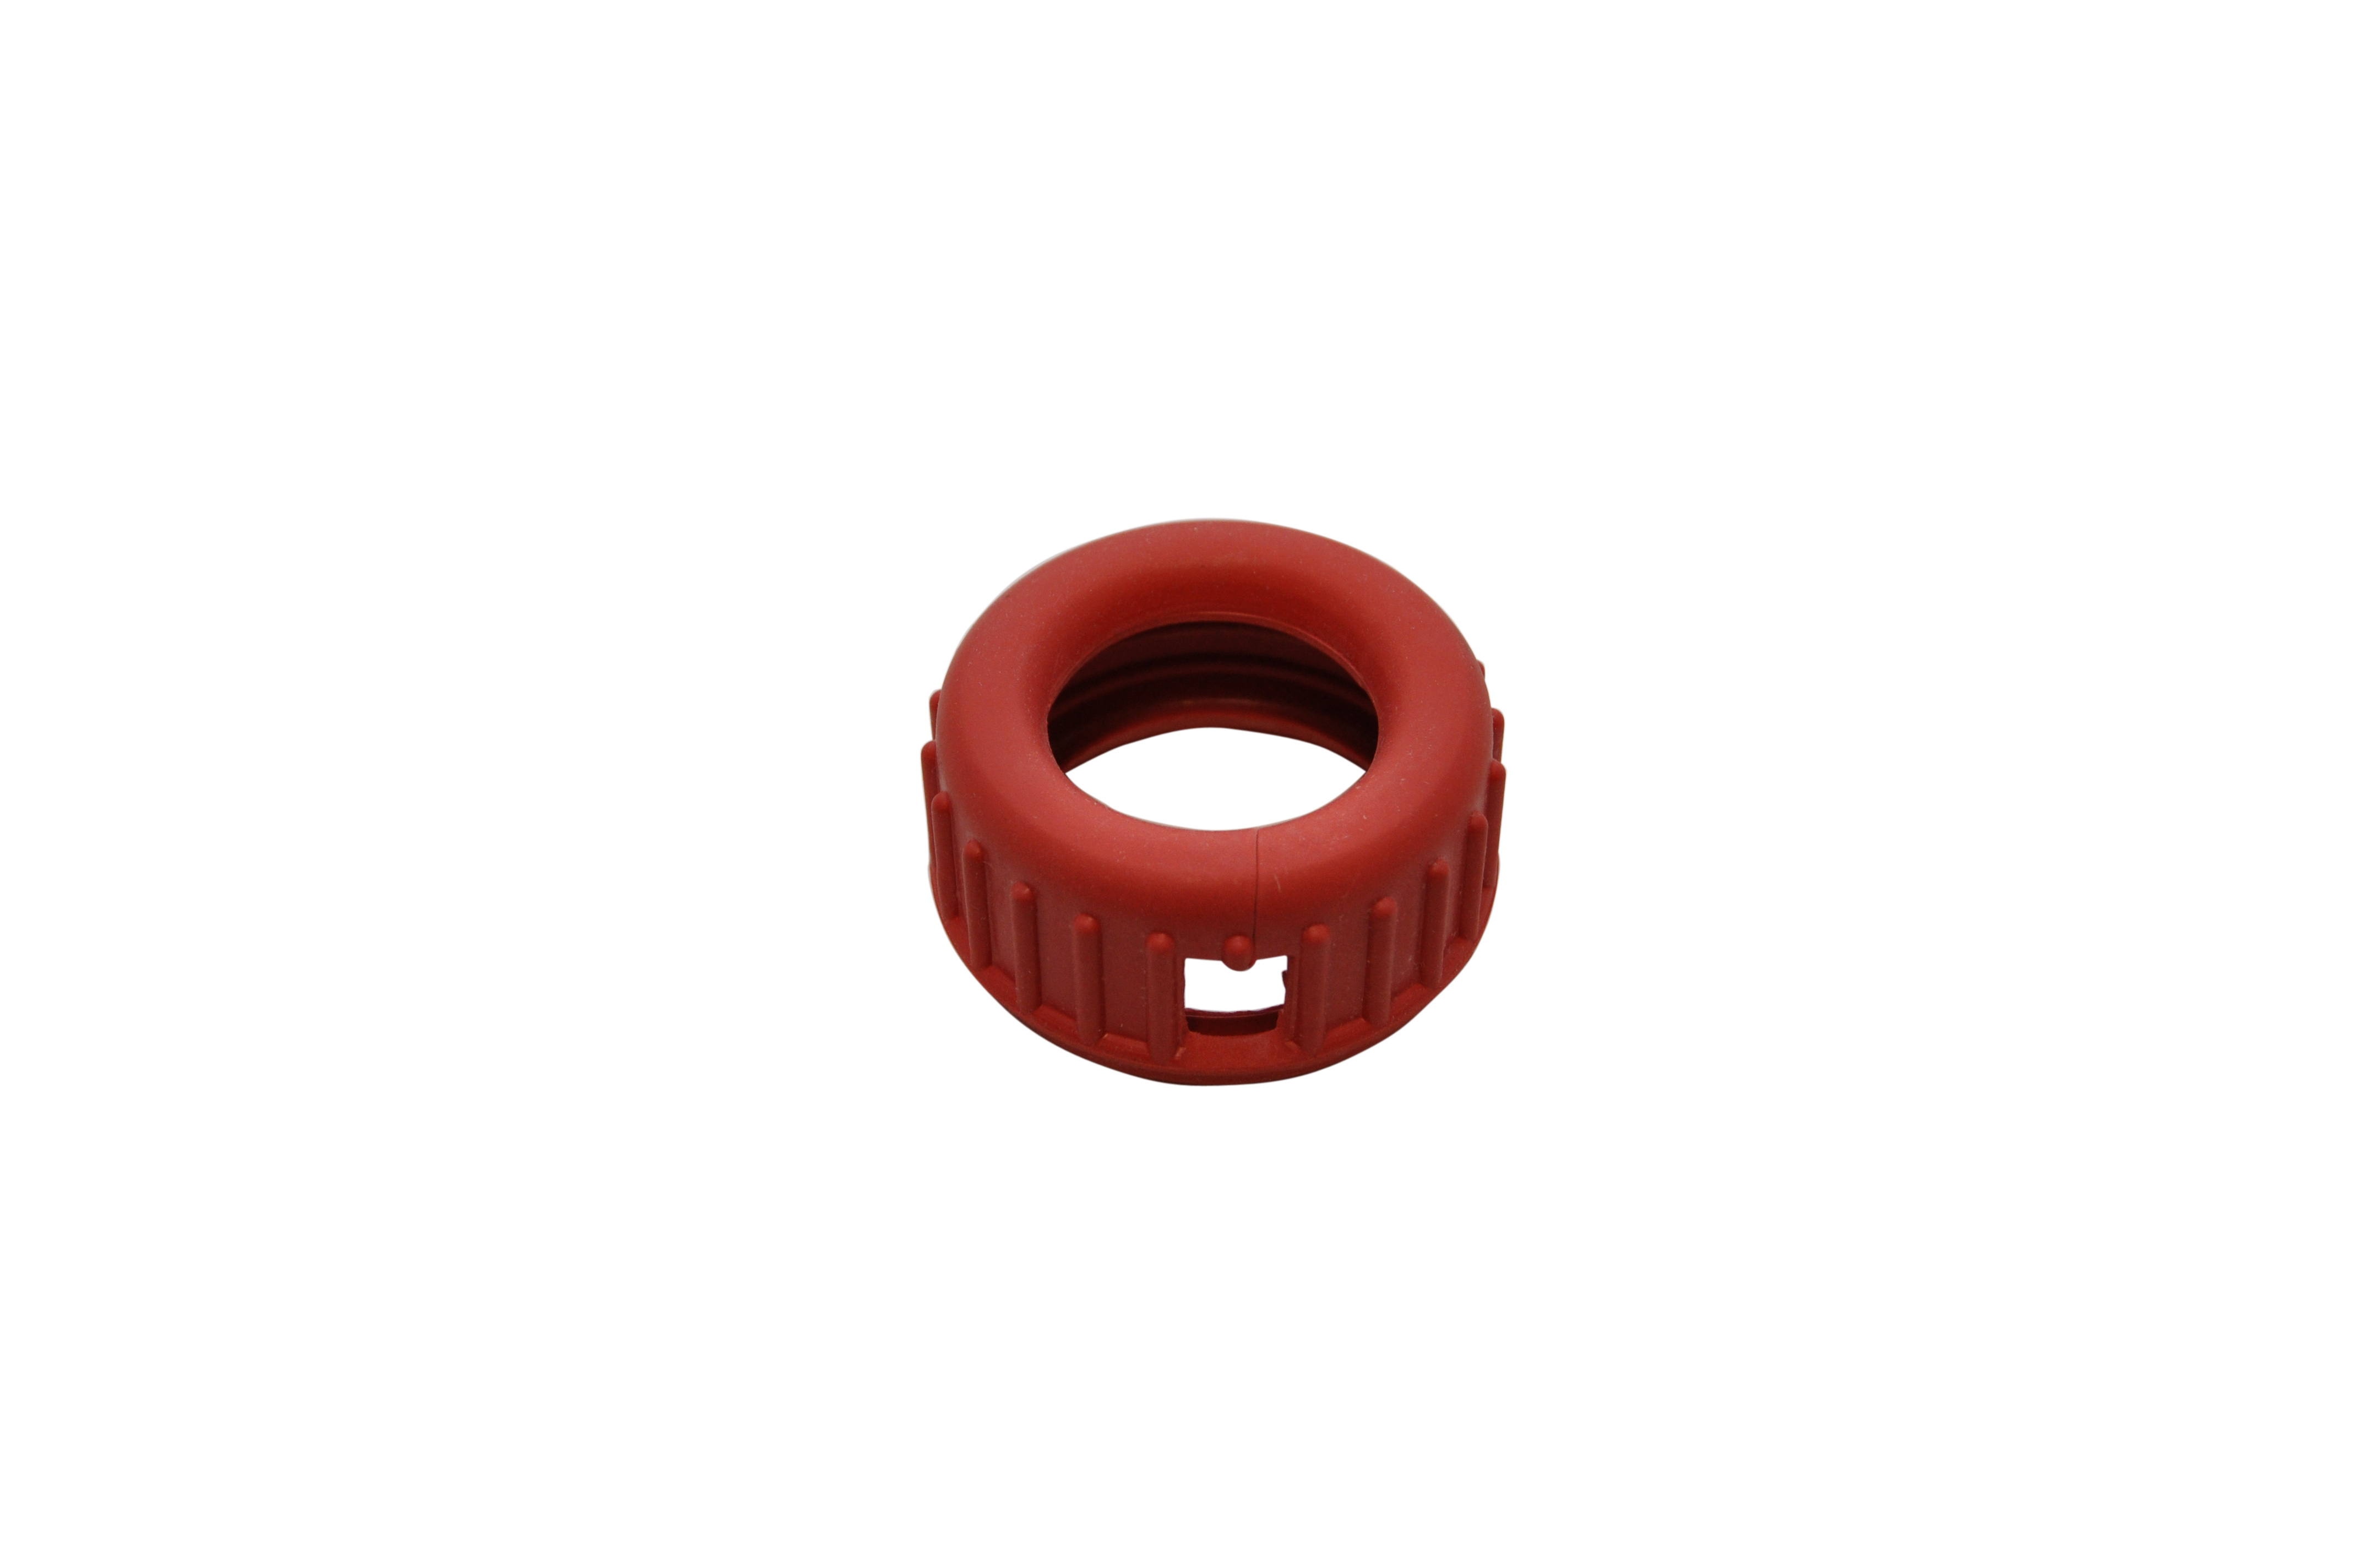 Gummischutzkappe, rot, 63 mm
für Spürgasmanometer